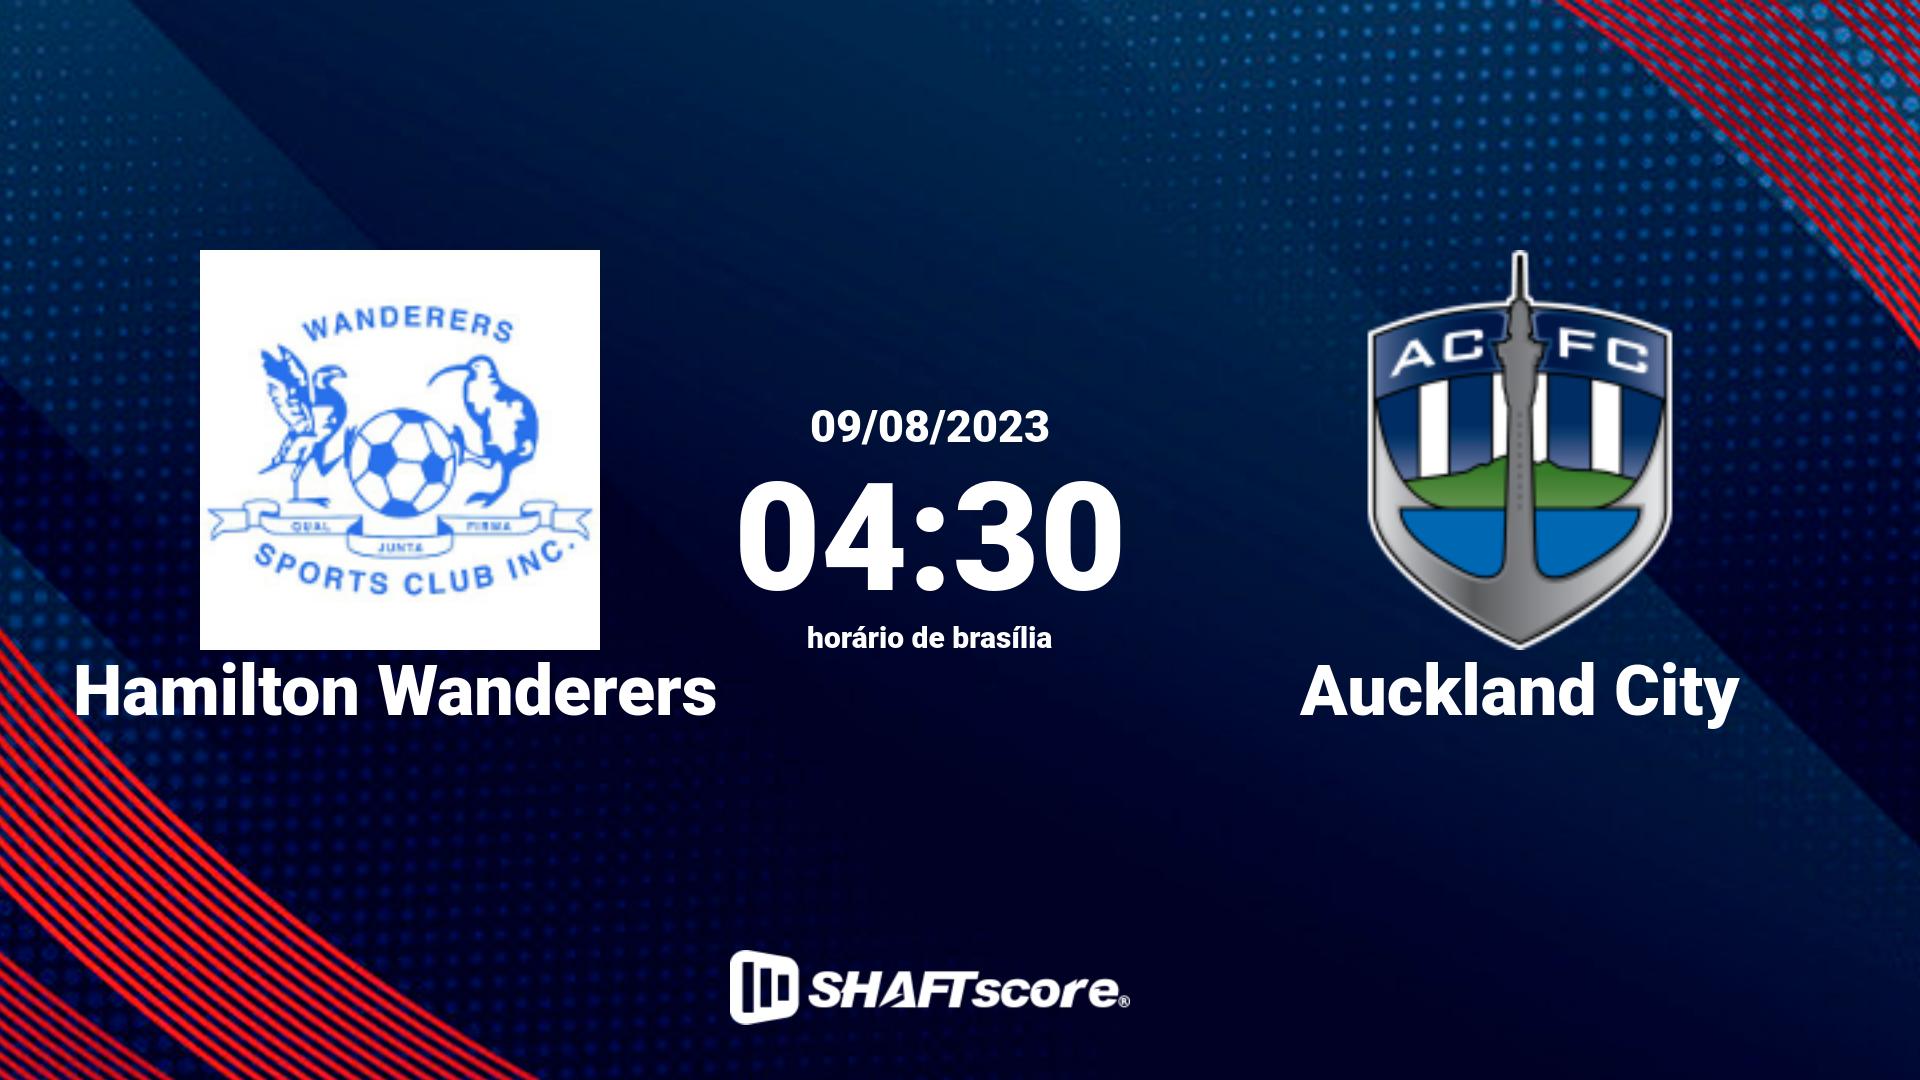 Estatísticas do jogo Hamilton Wanderers vs Auckland City 09.08 04:30